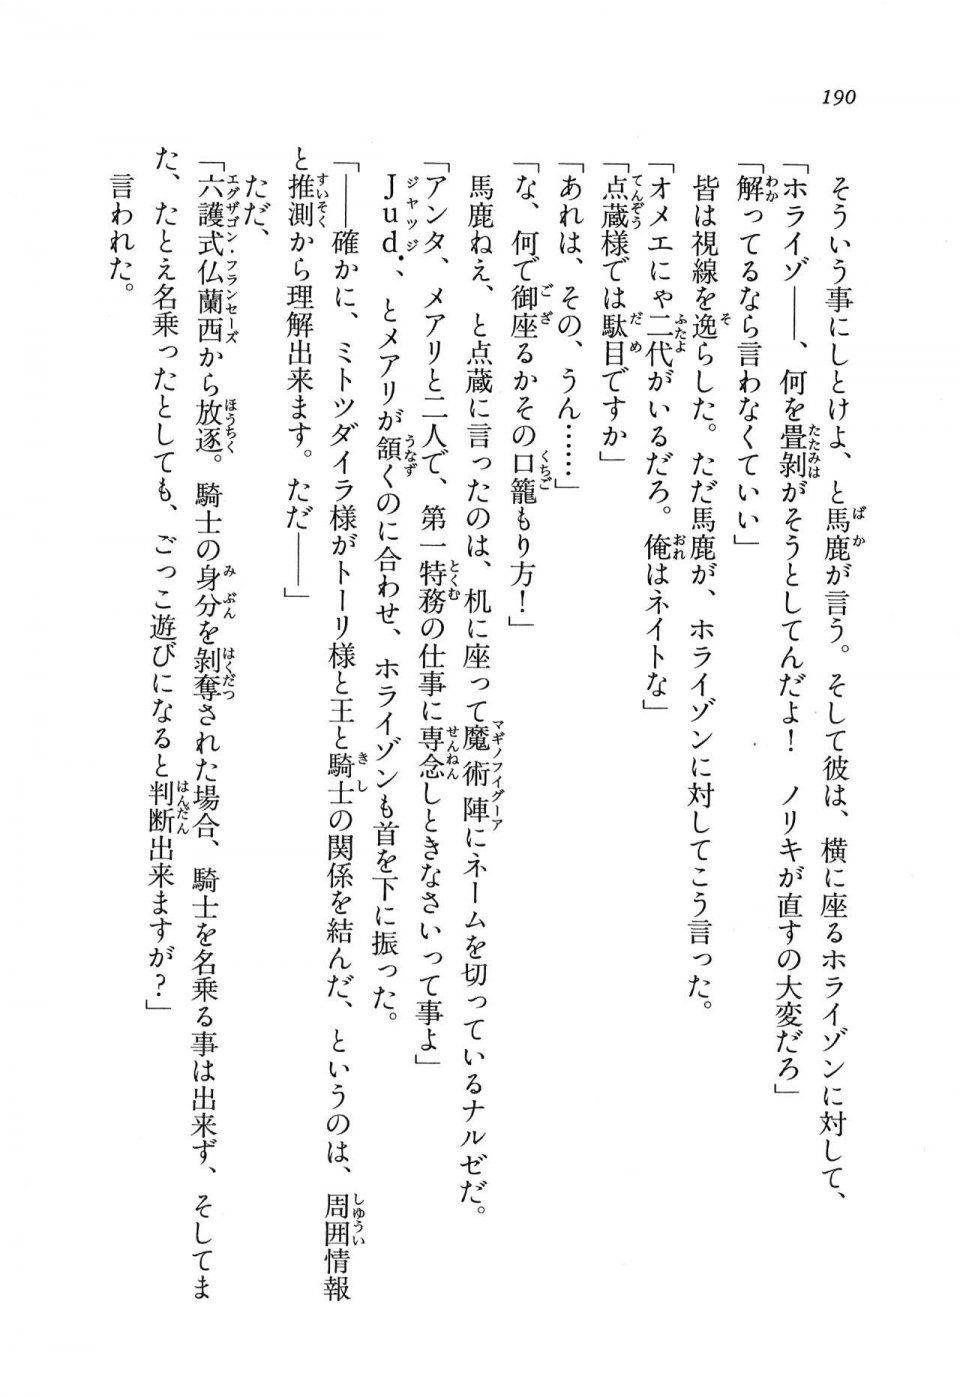 Kyoukai Senjou no Horizon LN Vol 11(5A) - Photo #190